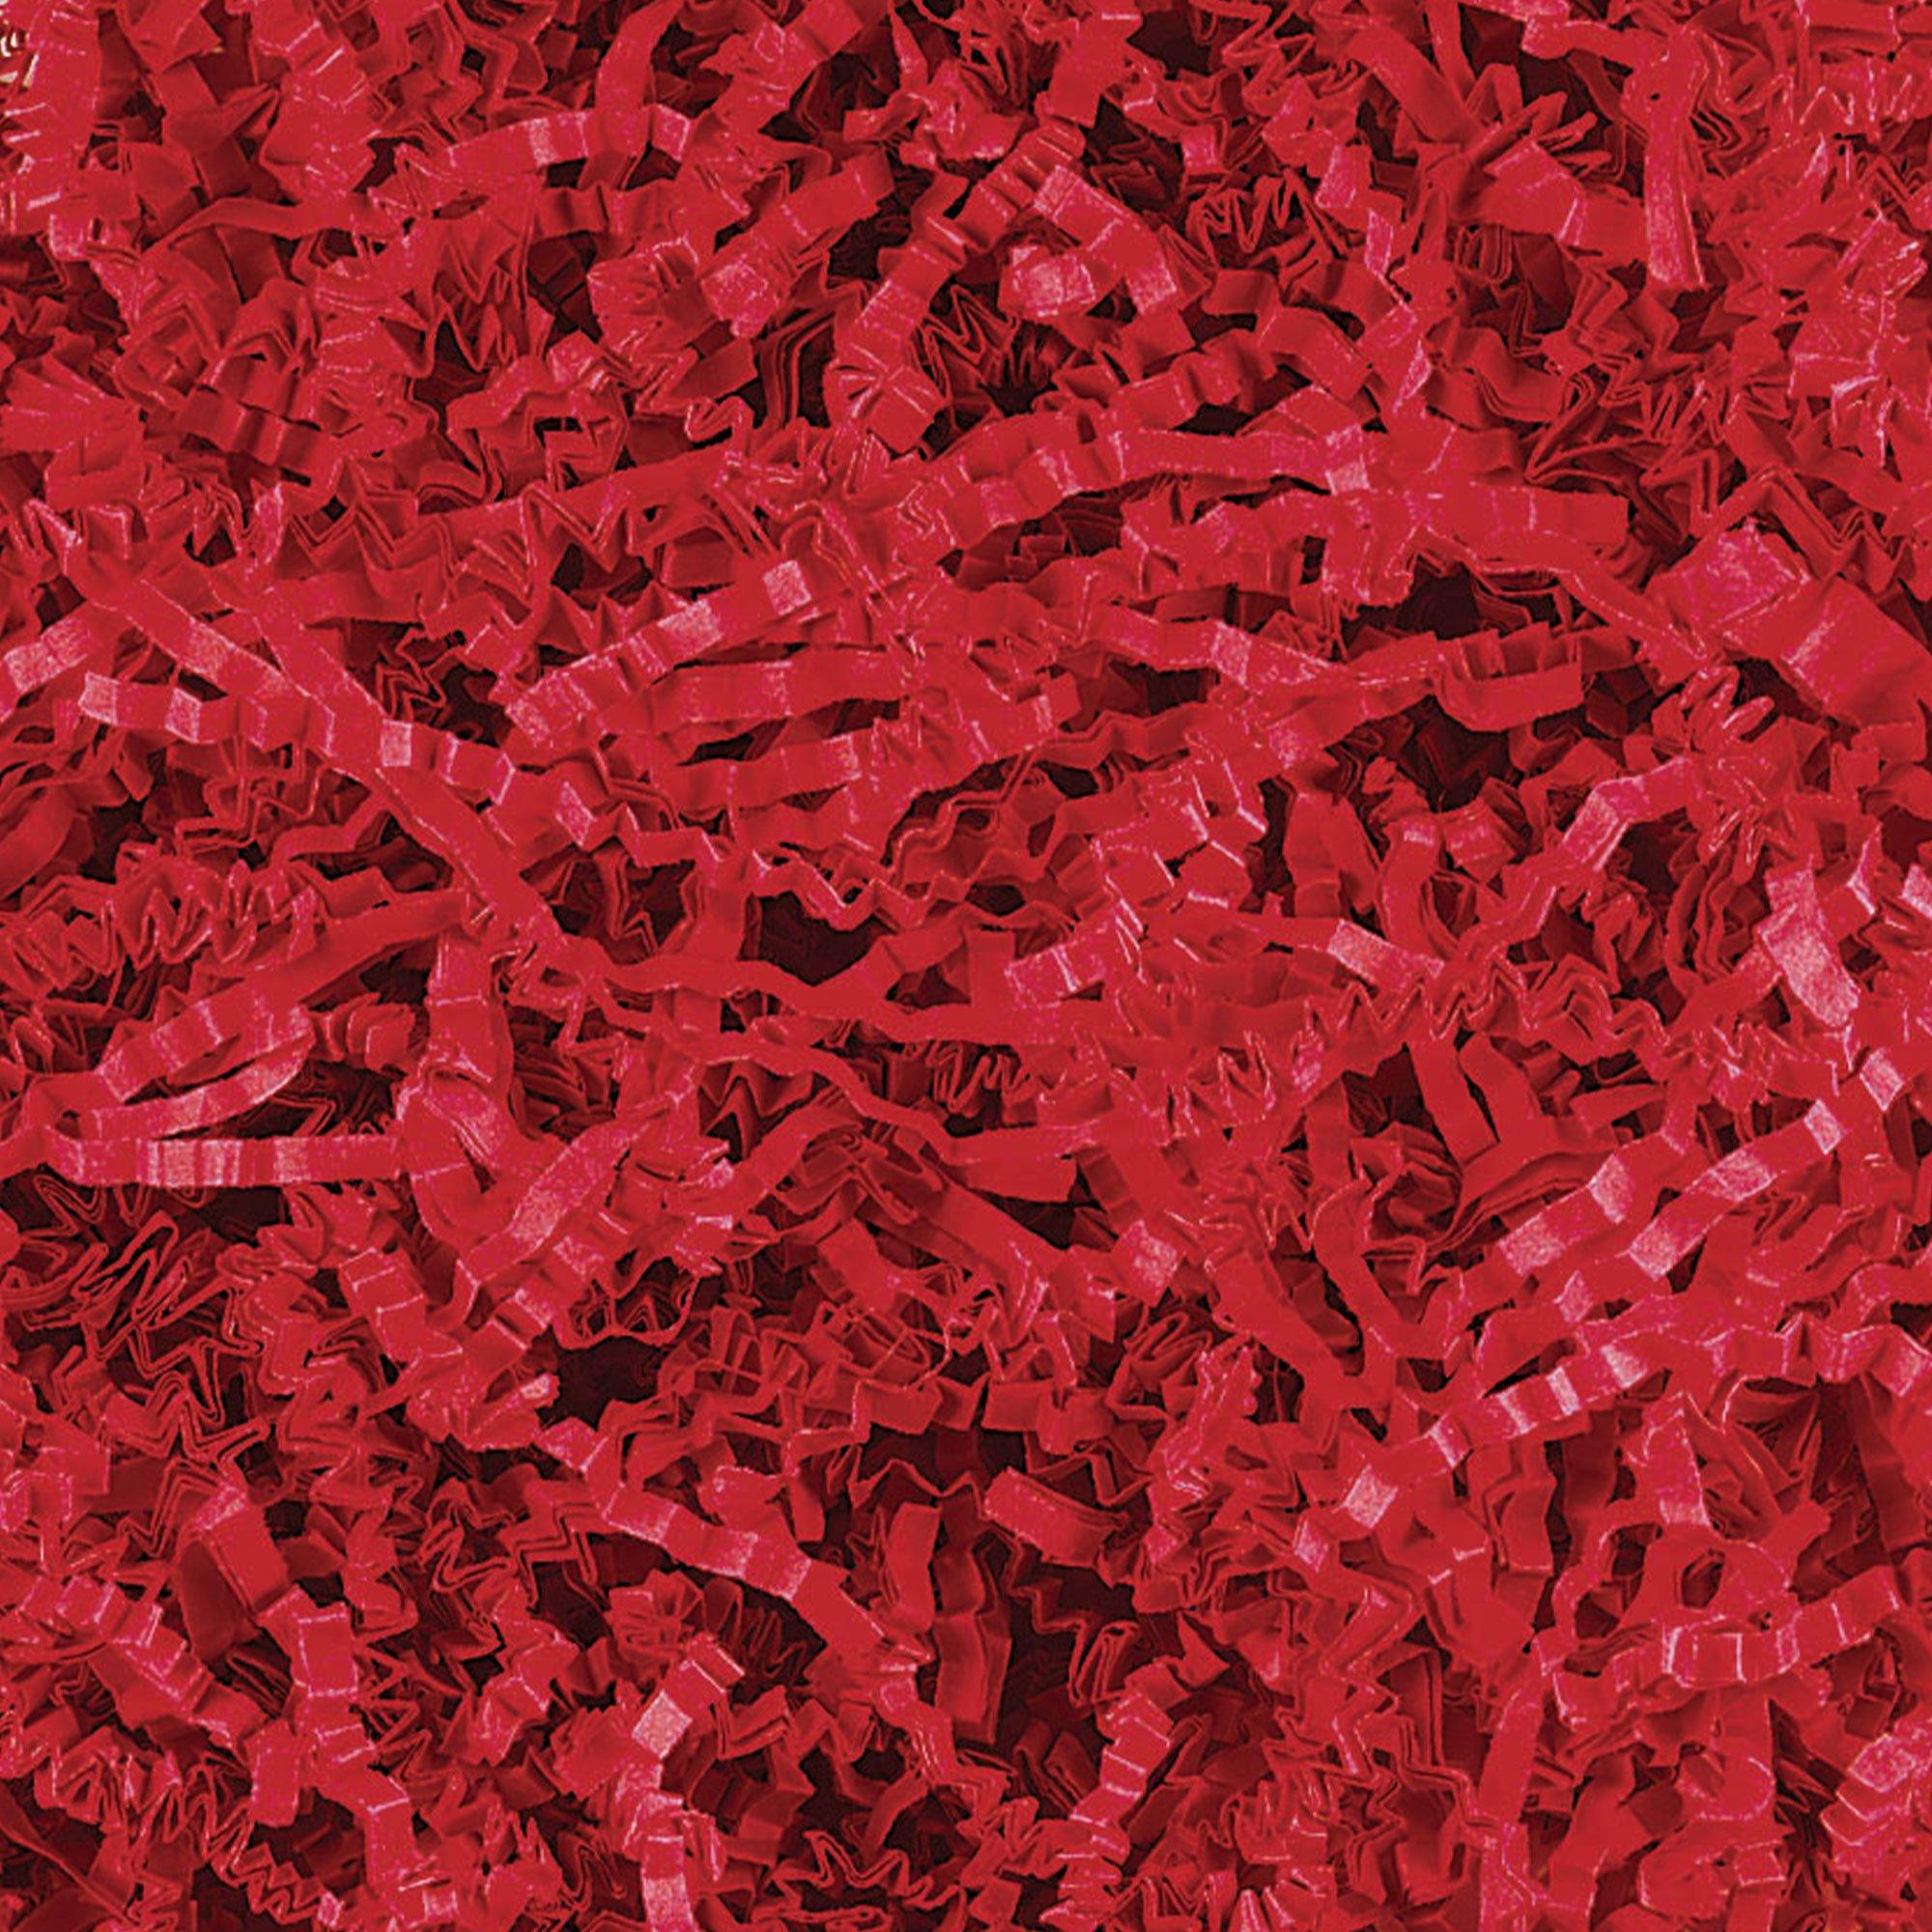 Red Shredded Gift Wrap Tissue Paper 60g 